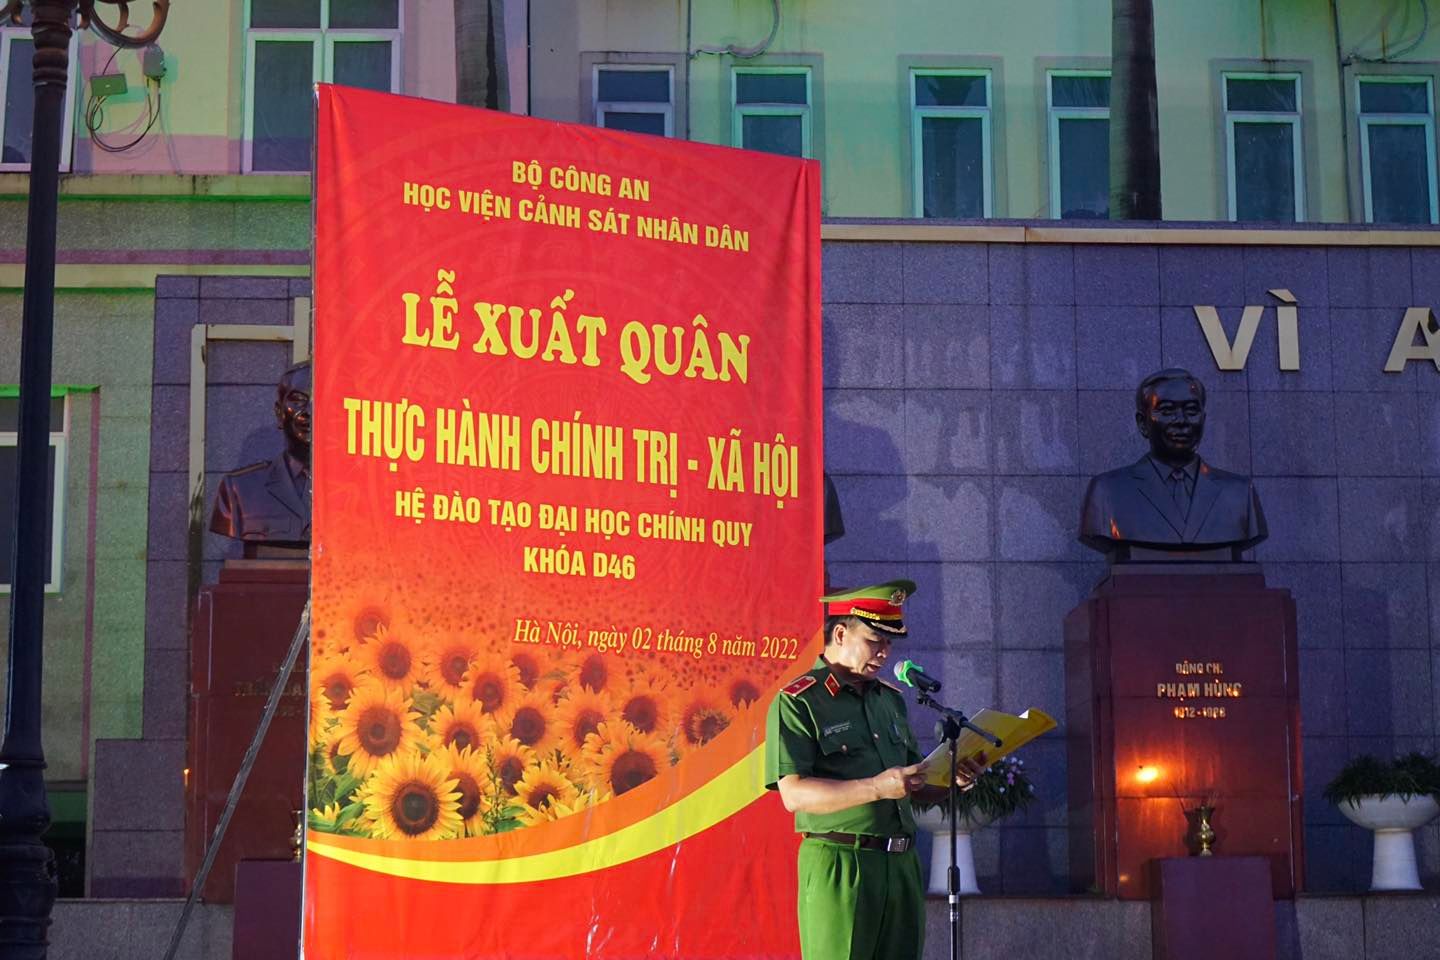 Thiếu tướng, GS. TS Nguyễn Đắc Hoan, Phó Giám đốc Học viện phát biểu chỉ đạo và tuyên bố lệnh xuất quân thực hành chính trị xã hội